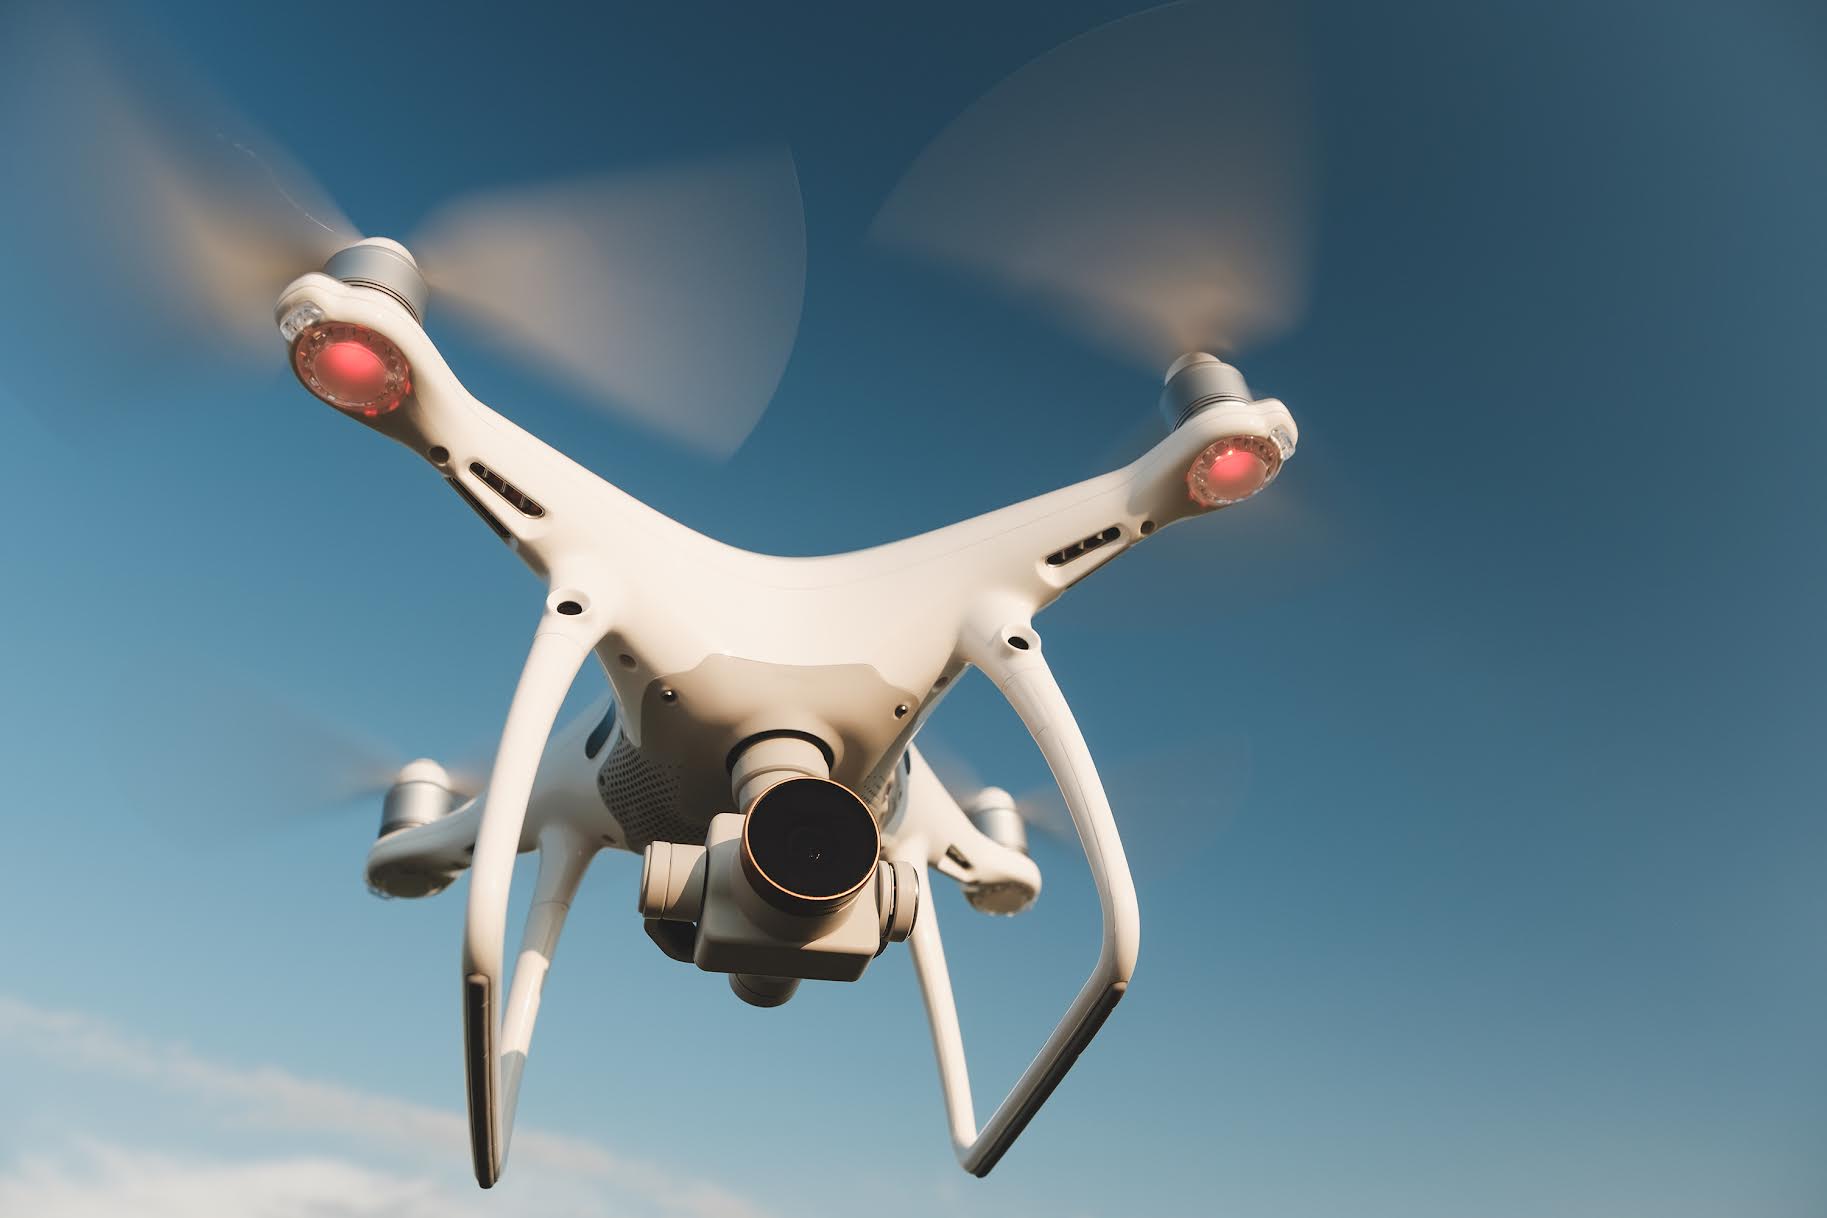 Costa Rica no corre peligro de atentados con uso de drones según expertos